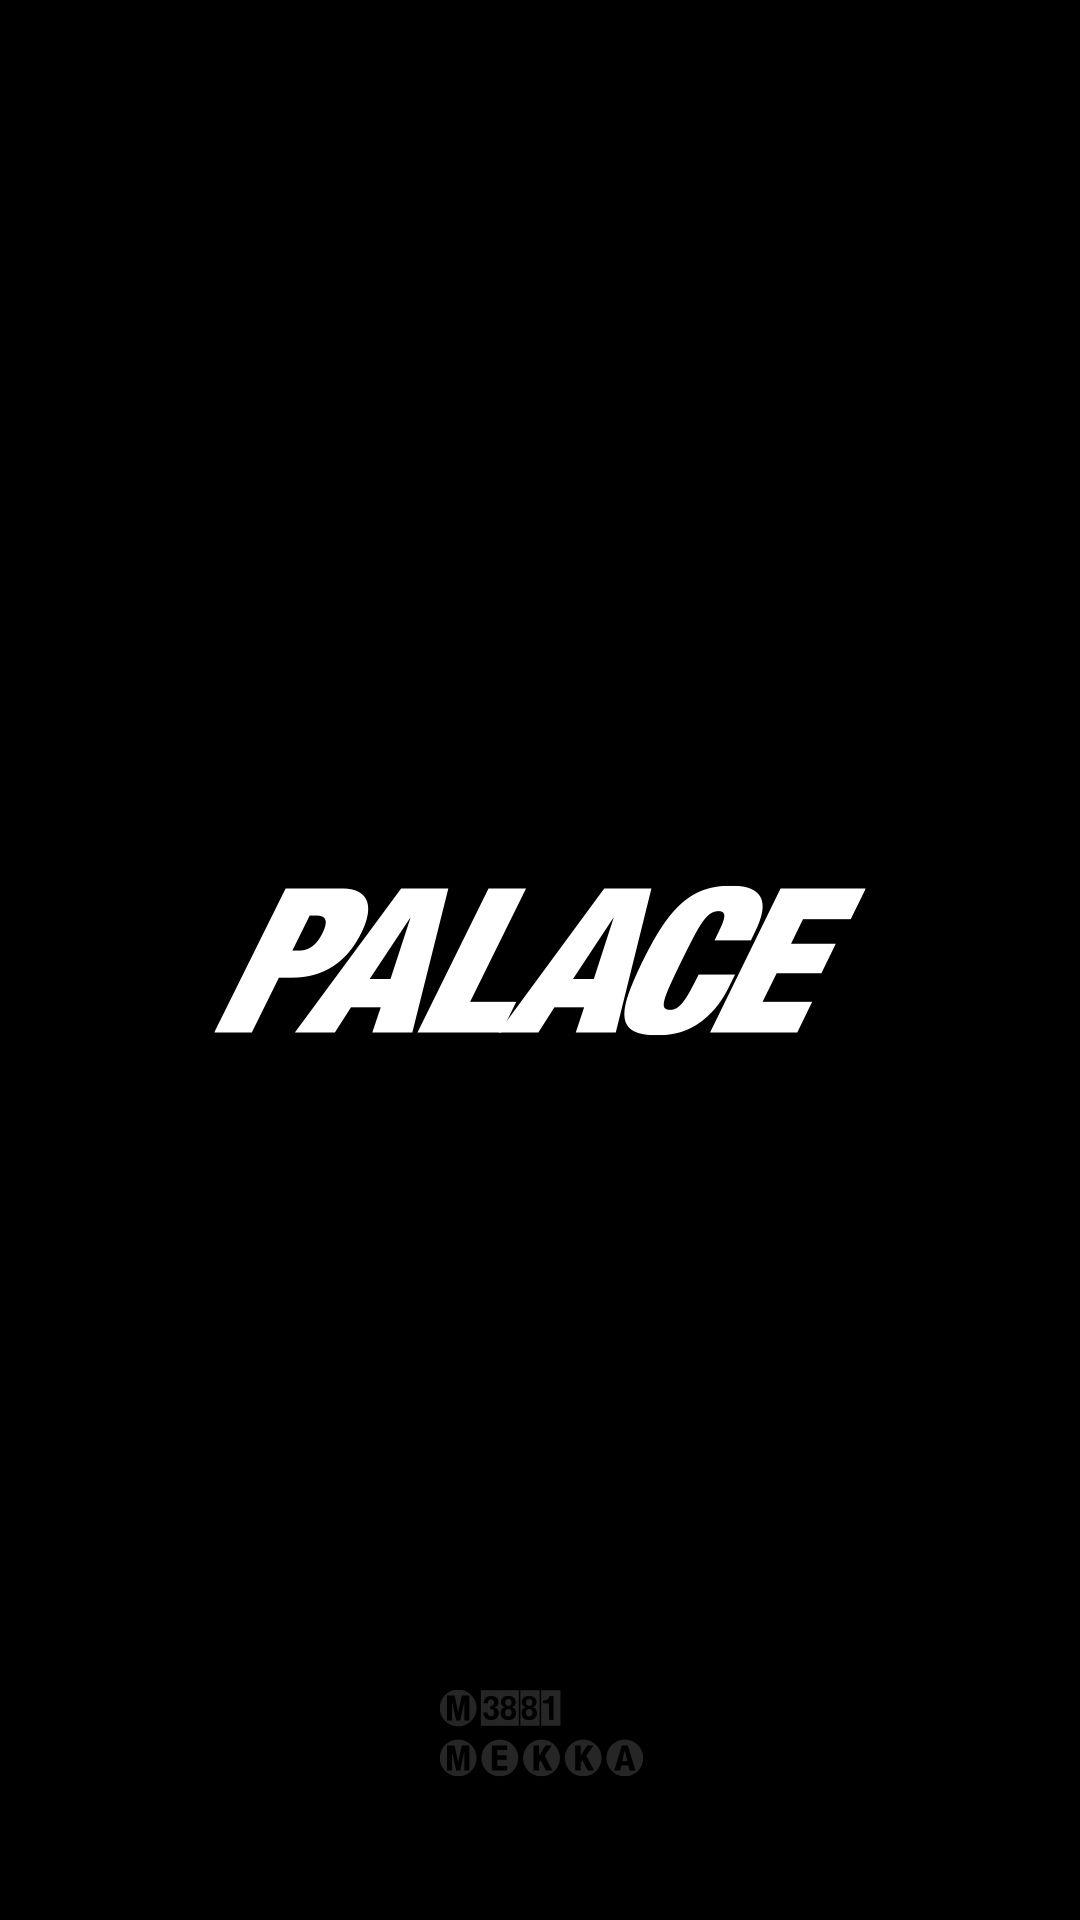 Palace Brand Logo - Palace Skateboards [M] – MEKKA GALLERY